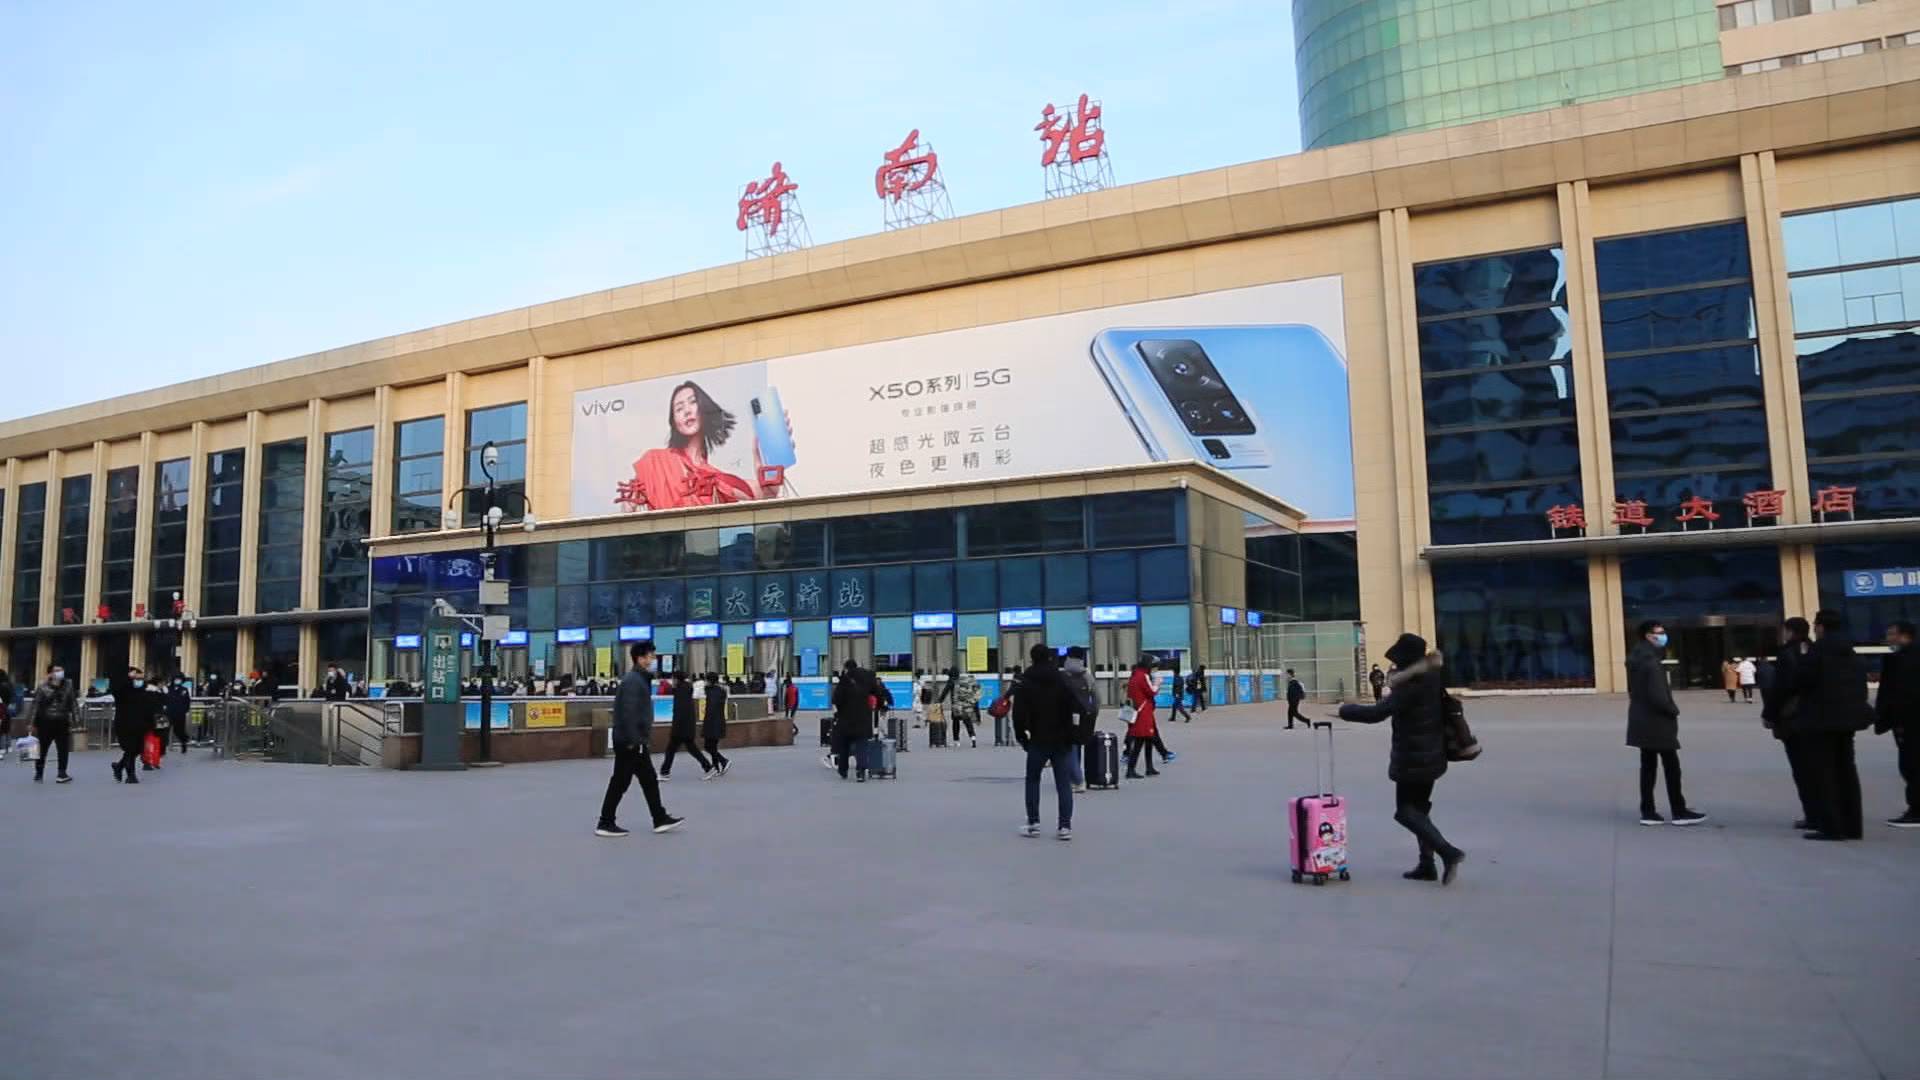 济南火车站相关项目最新进展！确定北站房建筑风格 推进南广场整体改造